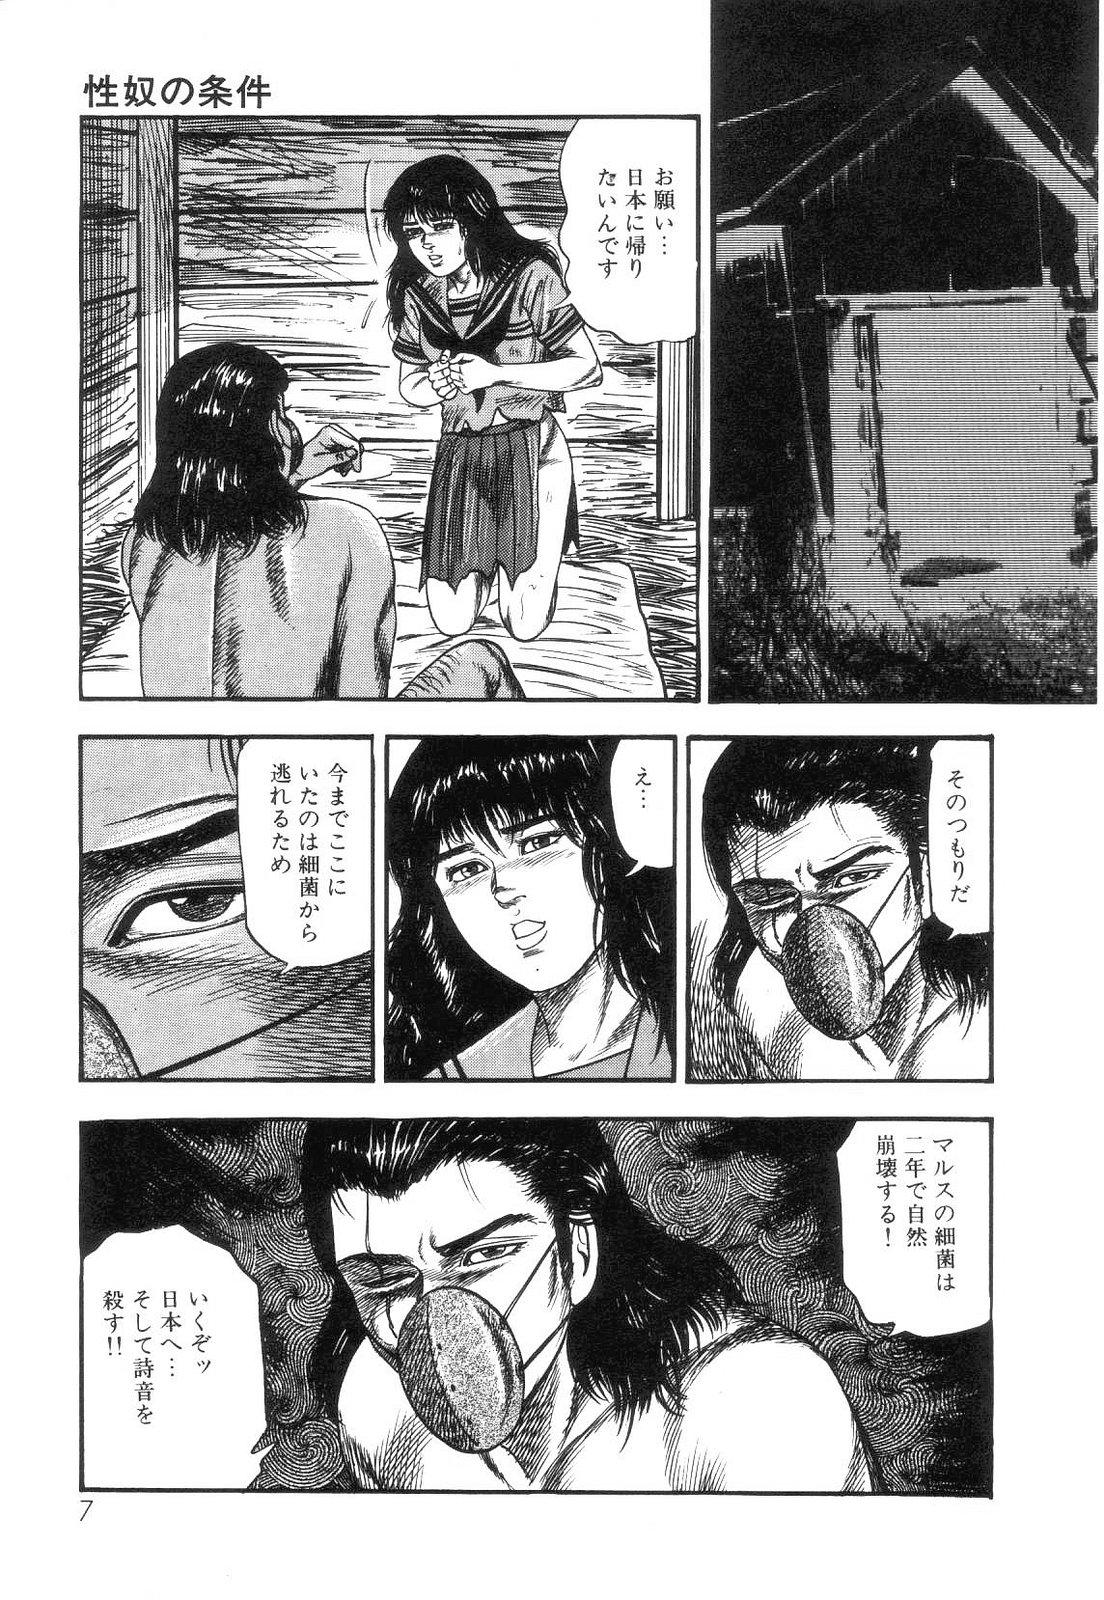 Cartoon Shiro no Mokushiroku Vol. 4 - Bichiku Karen no Shou Nuru Massage - Page 9